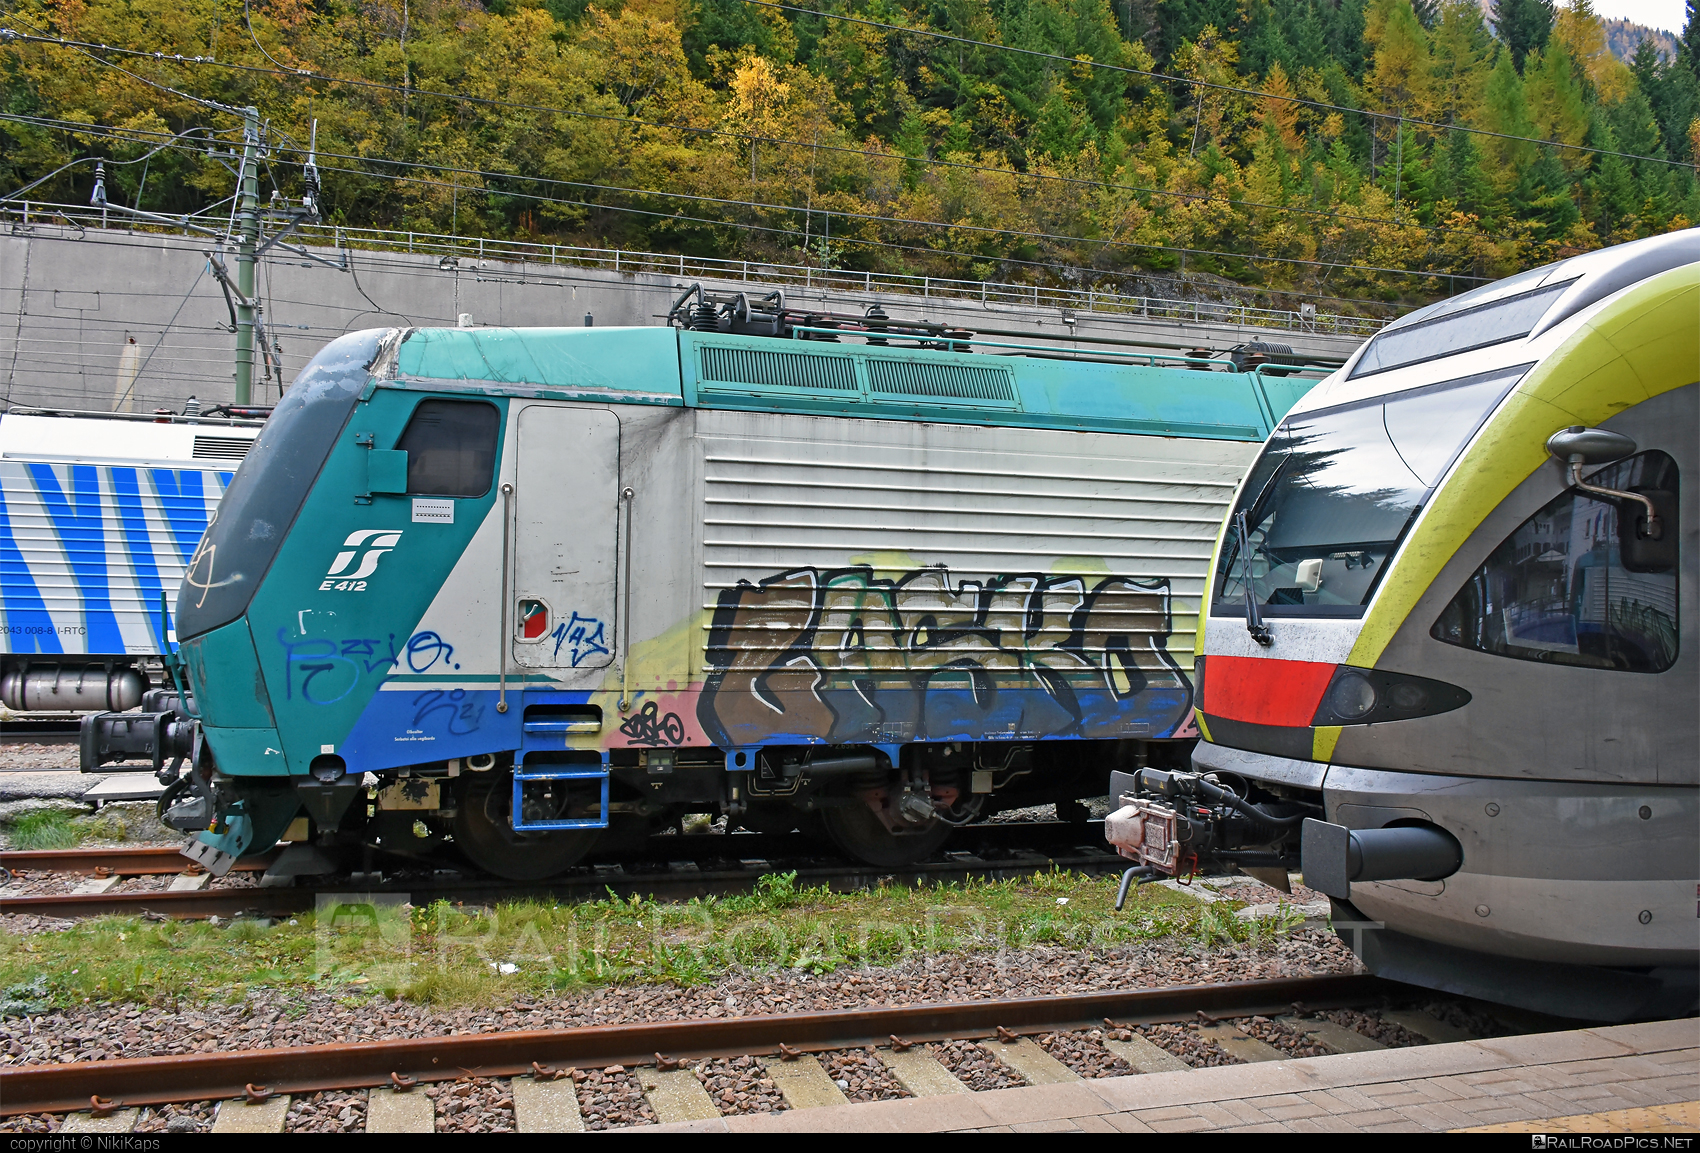 FS Class E.412 - E412 016 operated by Mercitalia Rail S.r.l. #e412 #ferroviedellostato #fs #fsClassE412 #fsitaliane #graffiti #mercitalia #trenitalia #trenitaliaspa